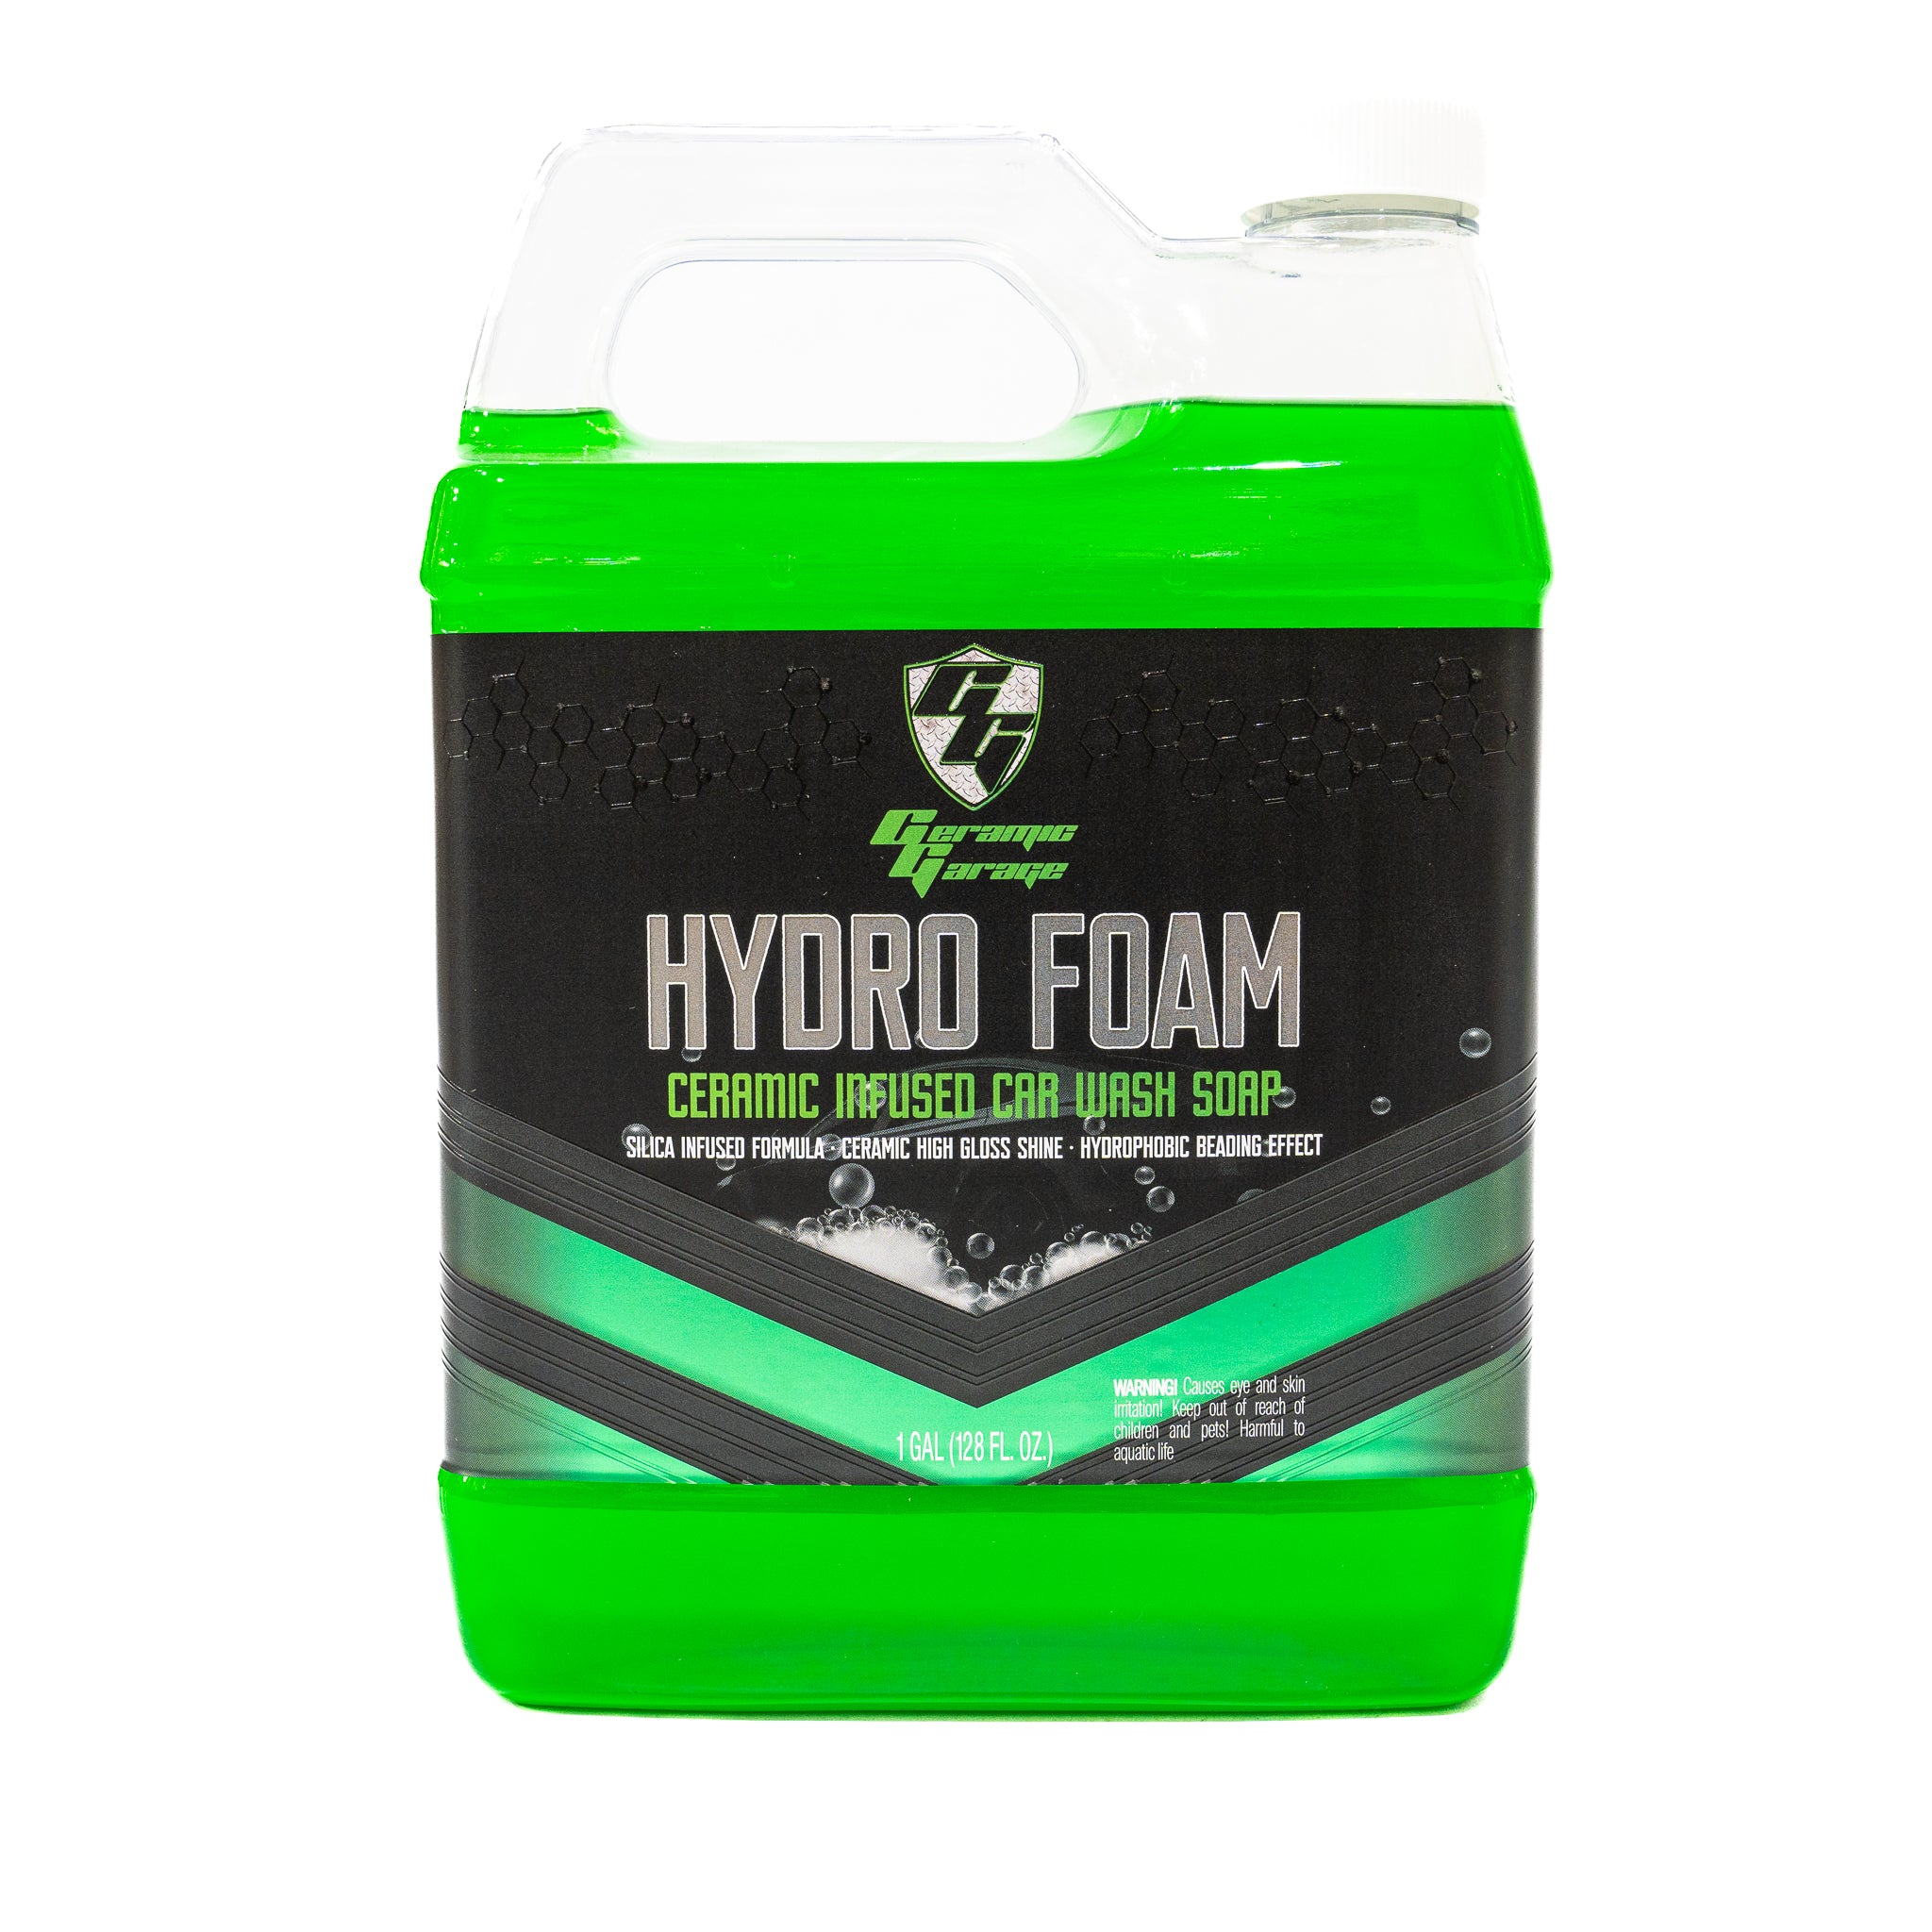 Ceramic Infused SiO2 Hydro Foam Car Wash Soap (Works with Foam